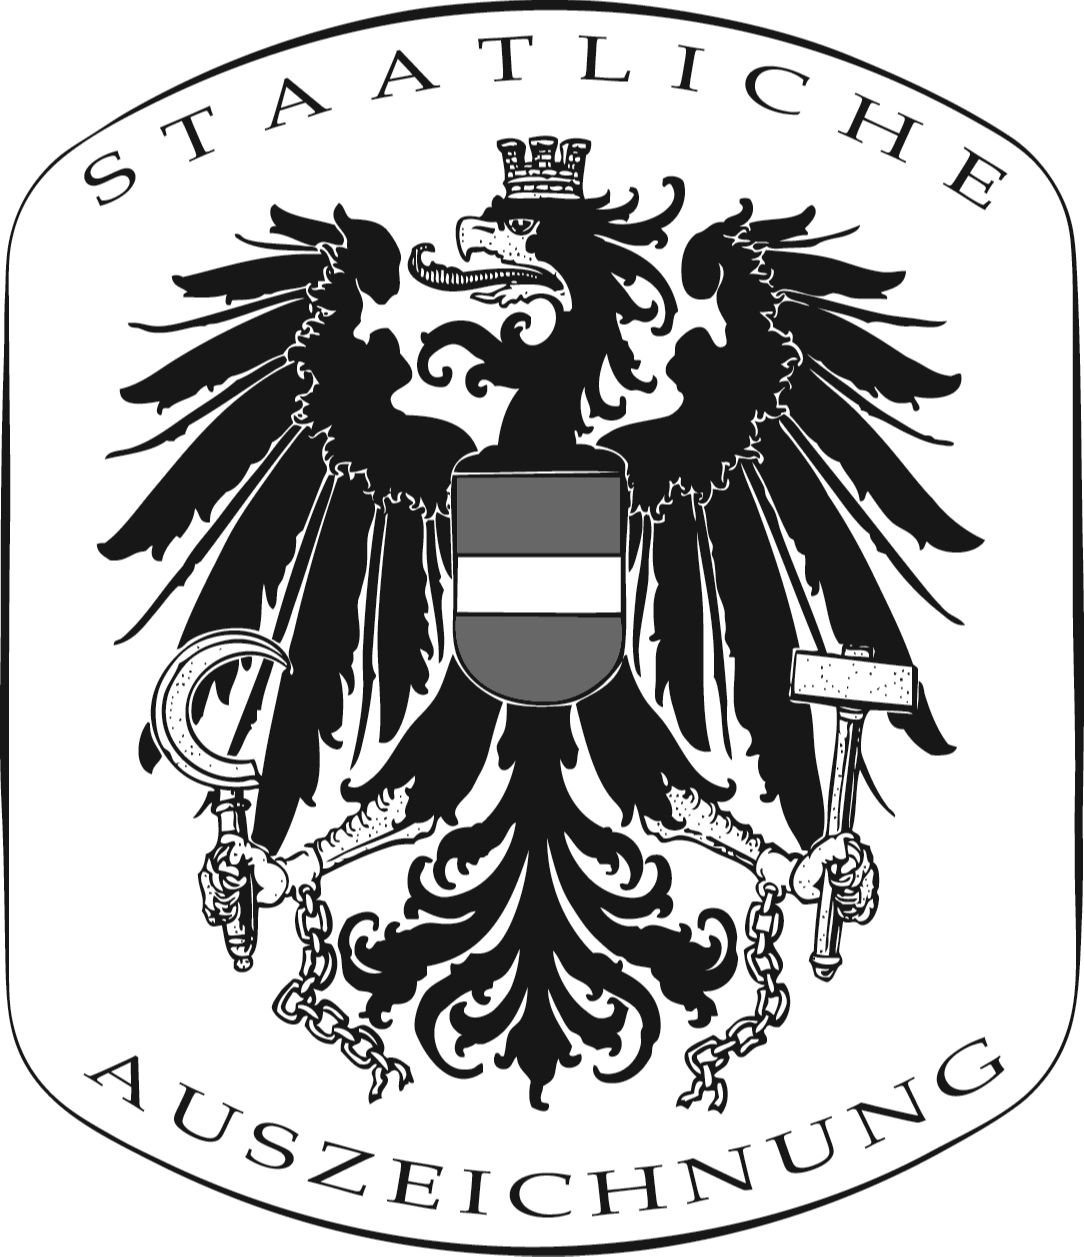 ZertifizierungundAuszeichnungen_OesterreichischesStaatswappen_1999